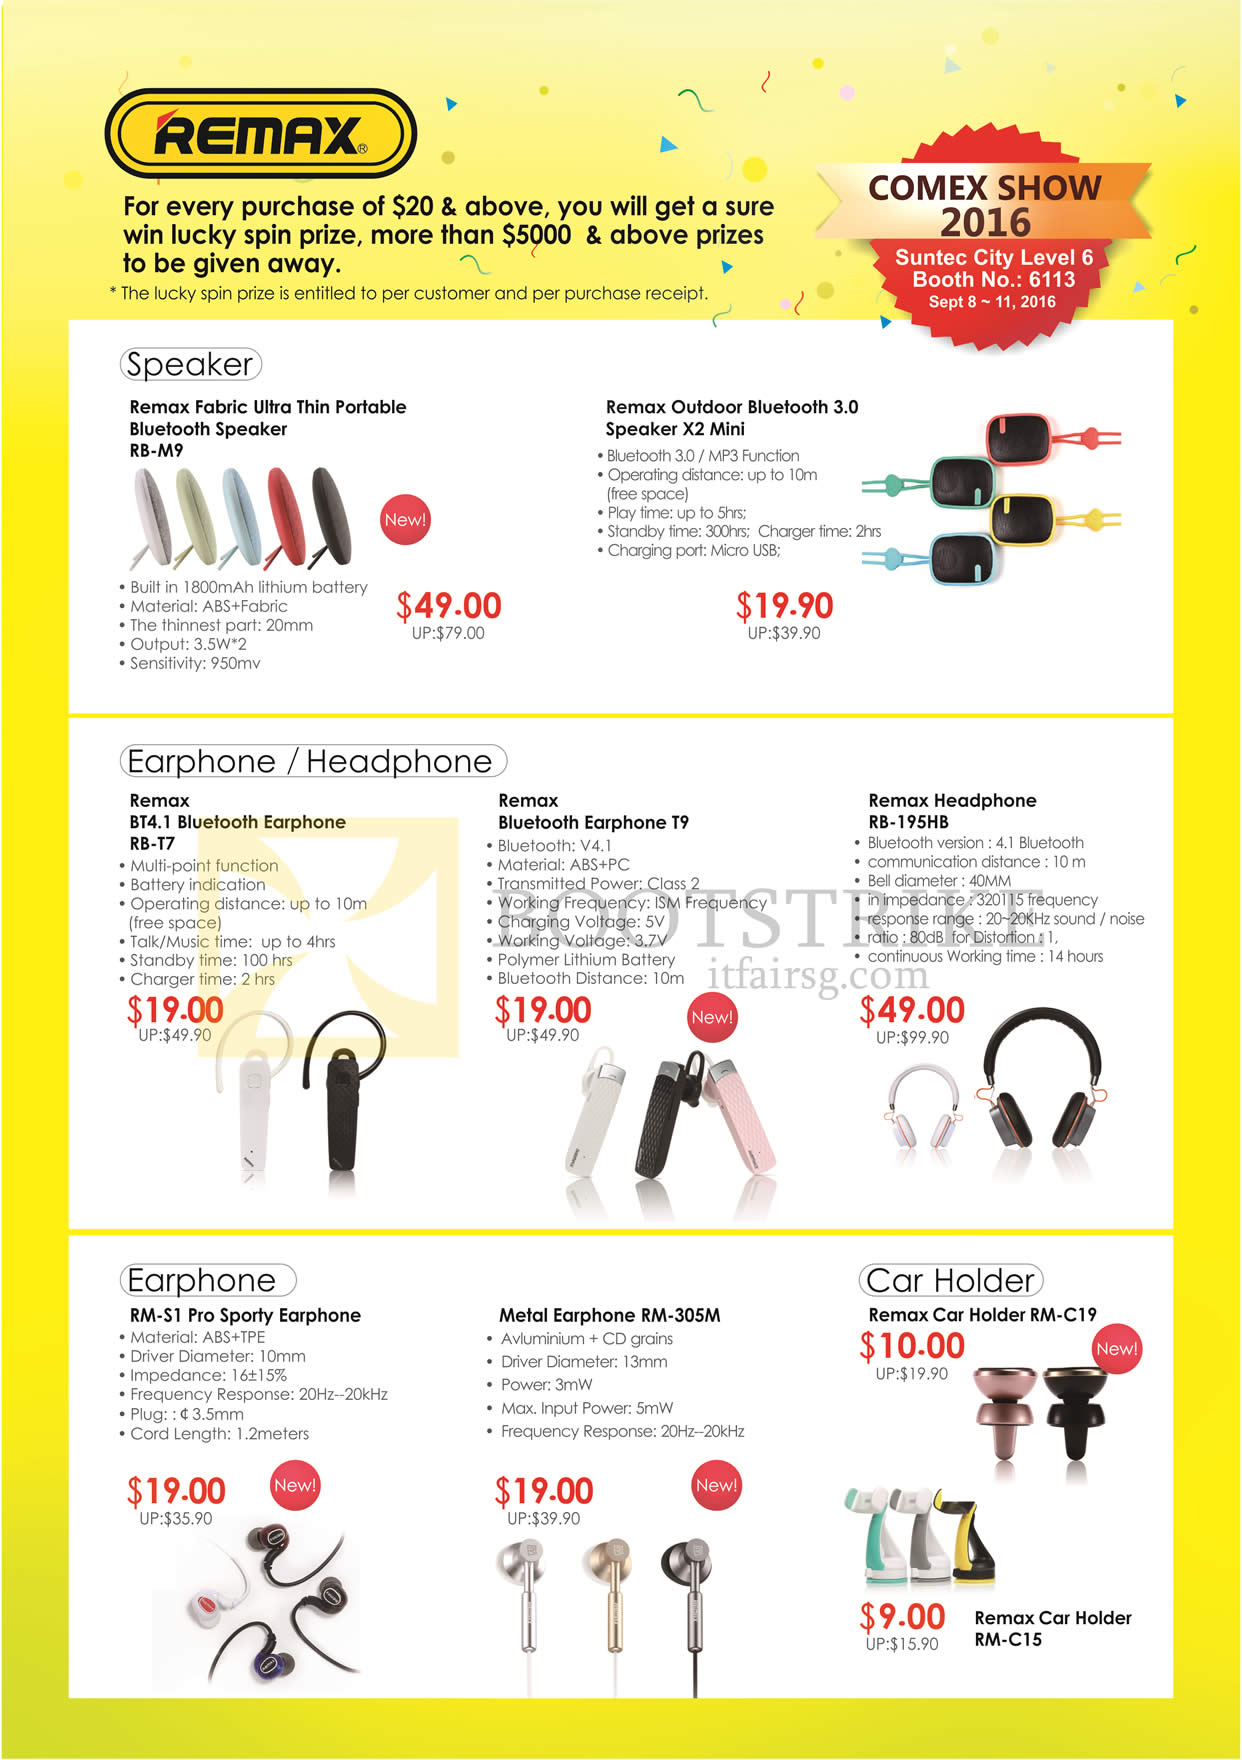 COMEX 2016 price list image brochure of Sprint-Cass Remax Speaker, Earphones, Headphones, Fabric, Outdoor, Bluetooth, Pro Sporty, Metal.jpg